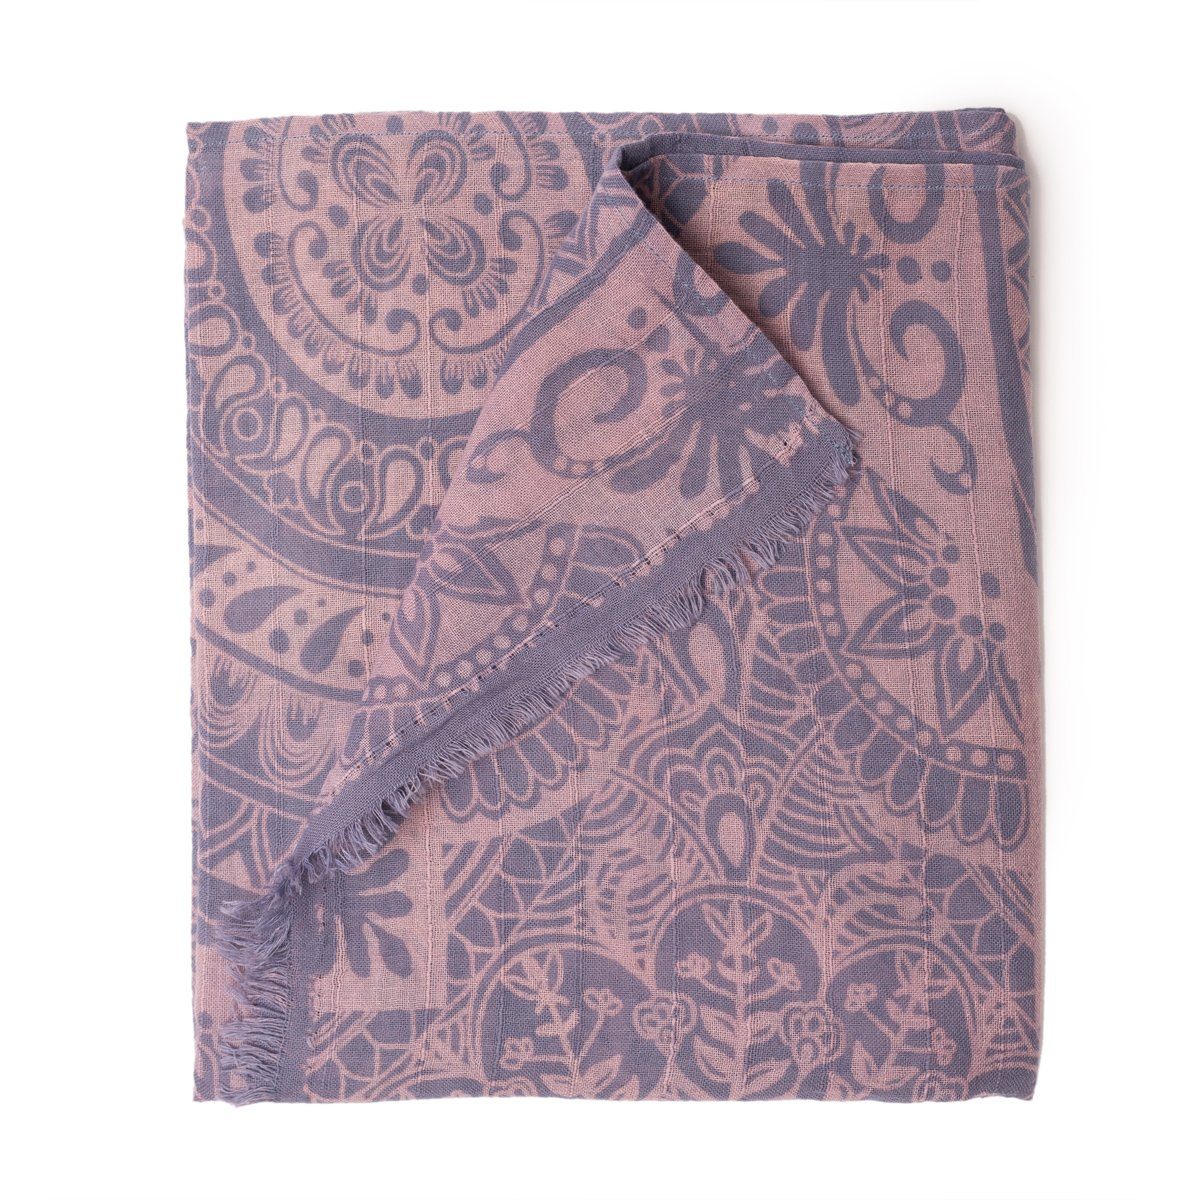 PANASIAM Halstuch elegantes Schaltuch auch als Schultertuch Schal oder Stola tragbar, in schönen farbigen Designs mit kleinen Fransen aus Baumwolle Mandala blau | Halstücher